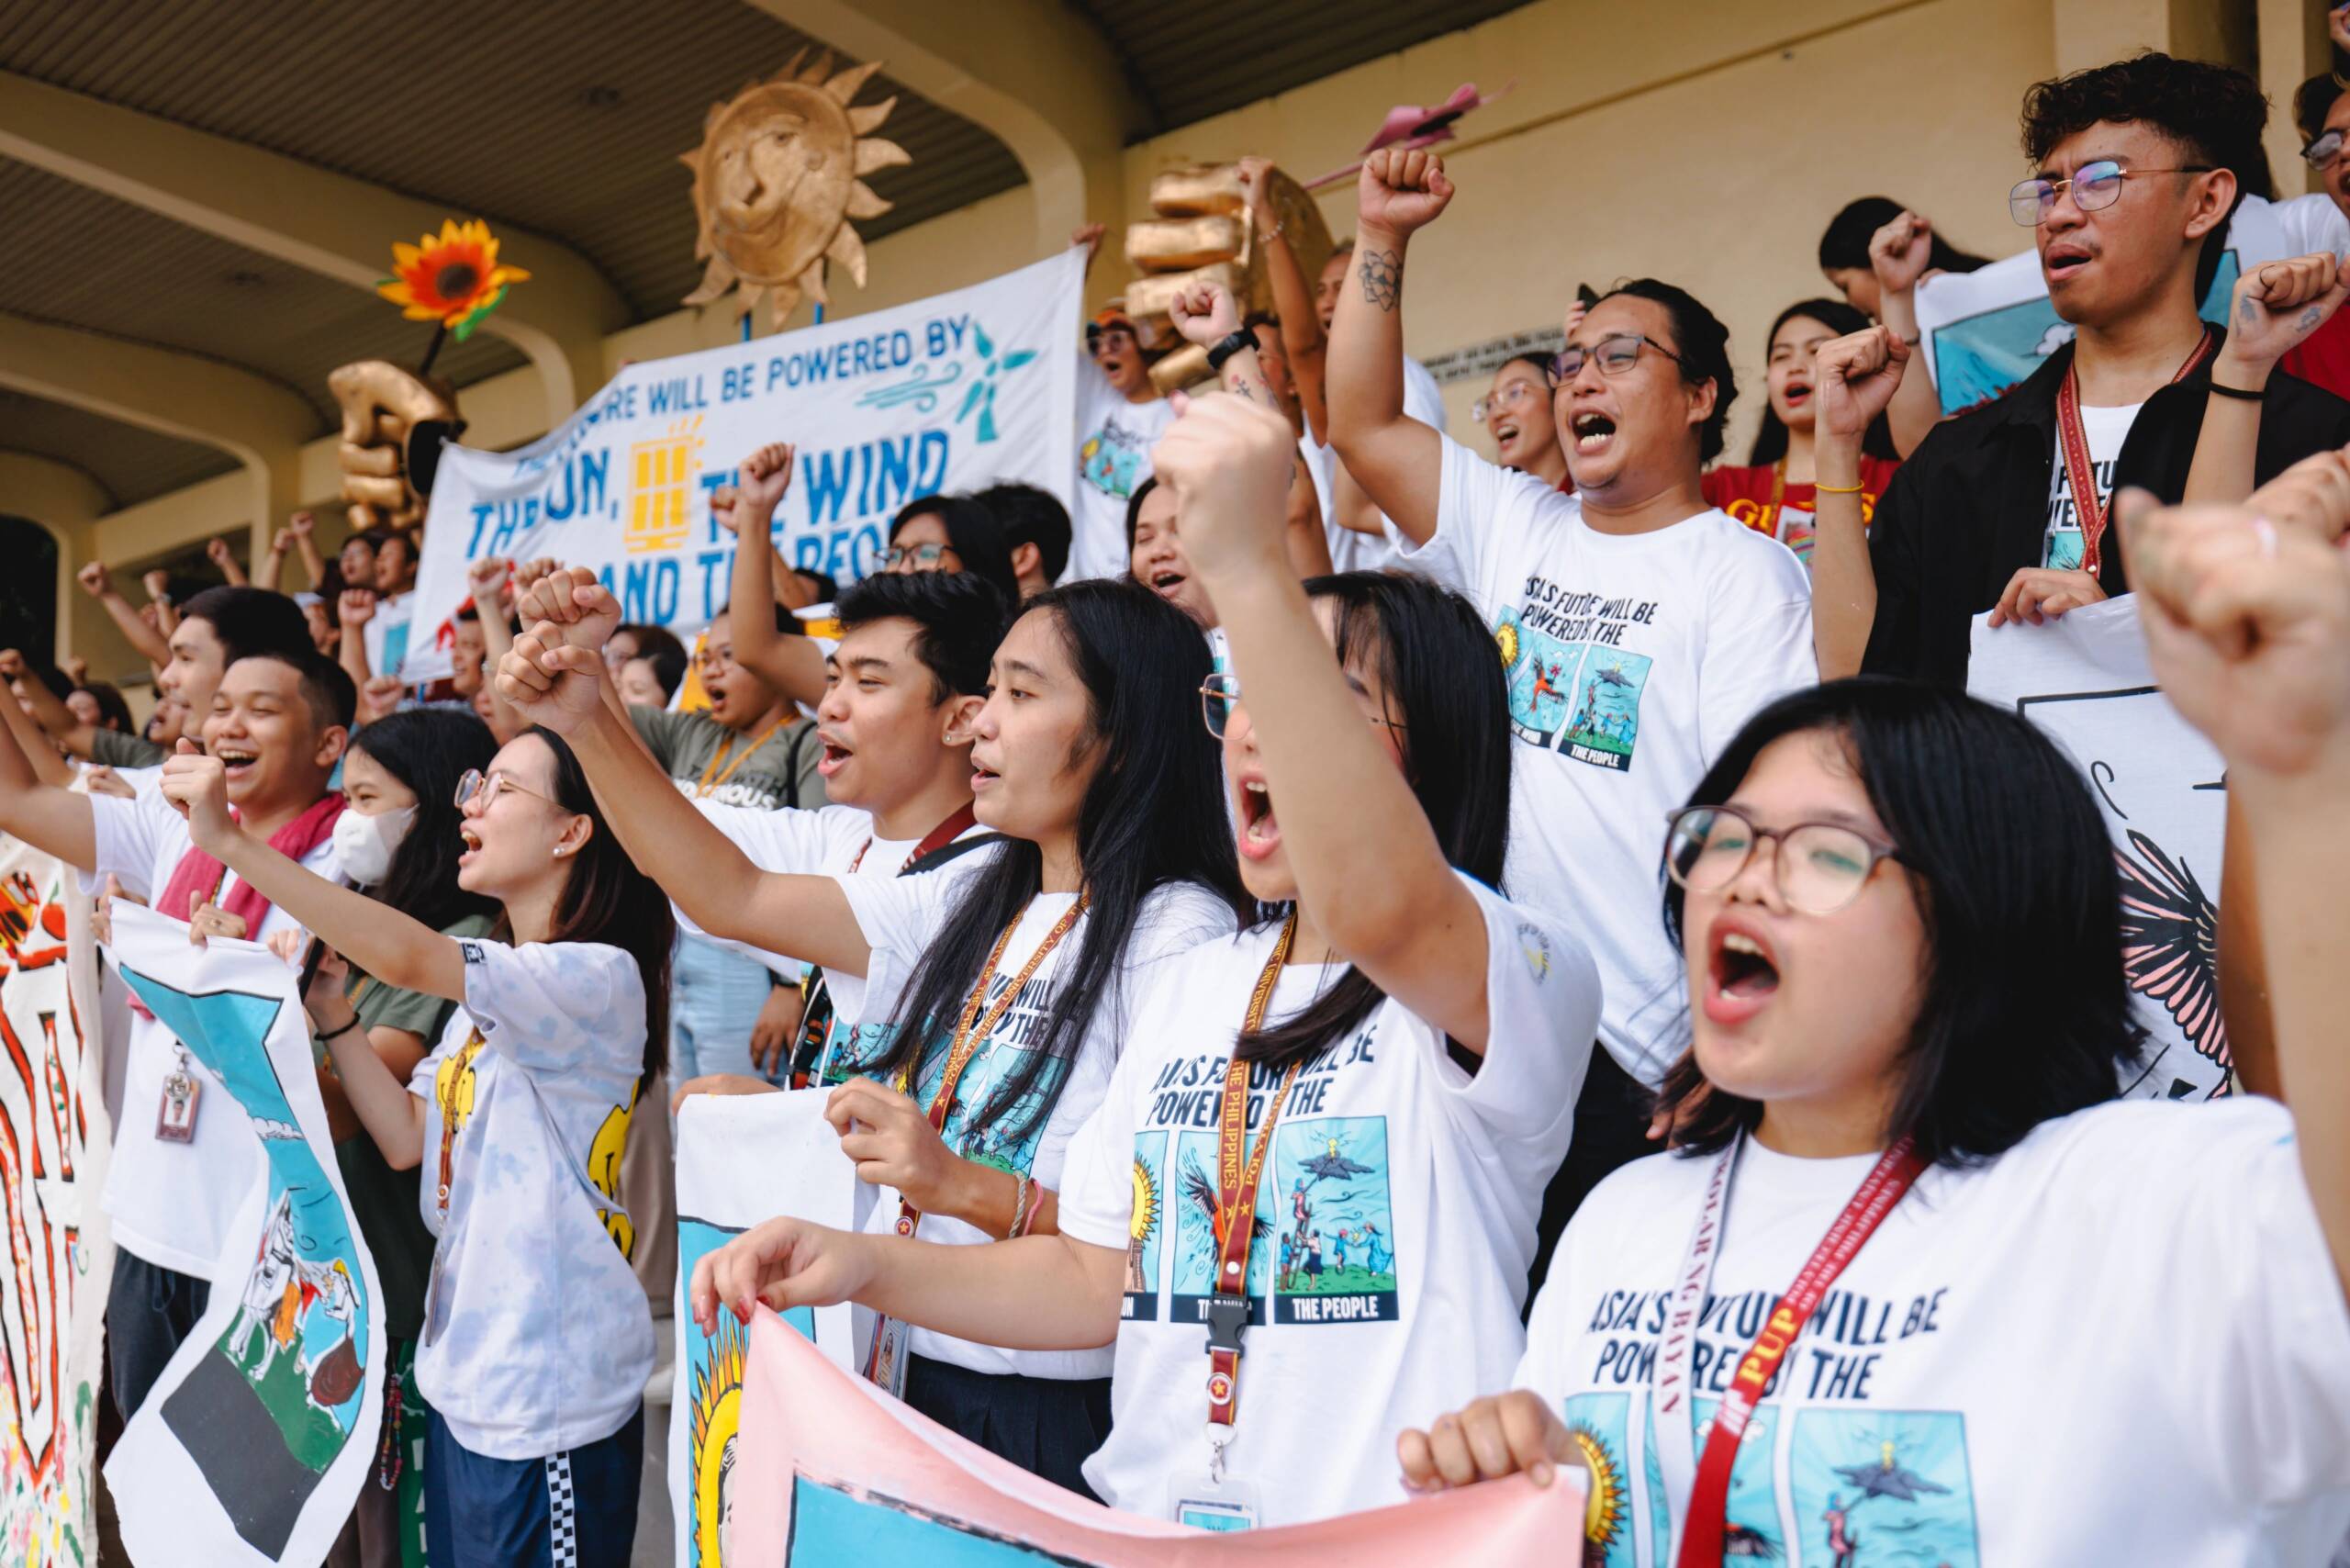 フィリピン マニラ 11月8日：太陽光、風力、そして人々を動力源とする未来を求める気候活動家とPolytechnic University of the Philippines（PUP）のコミュニティ。また観測史上最強級の平成25年台風第30号（ハイヤン）の壊滅的被害から10周年の節目となる行動となった。写真提供：Jilson Tiu